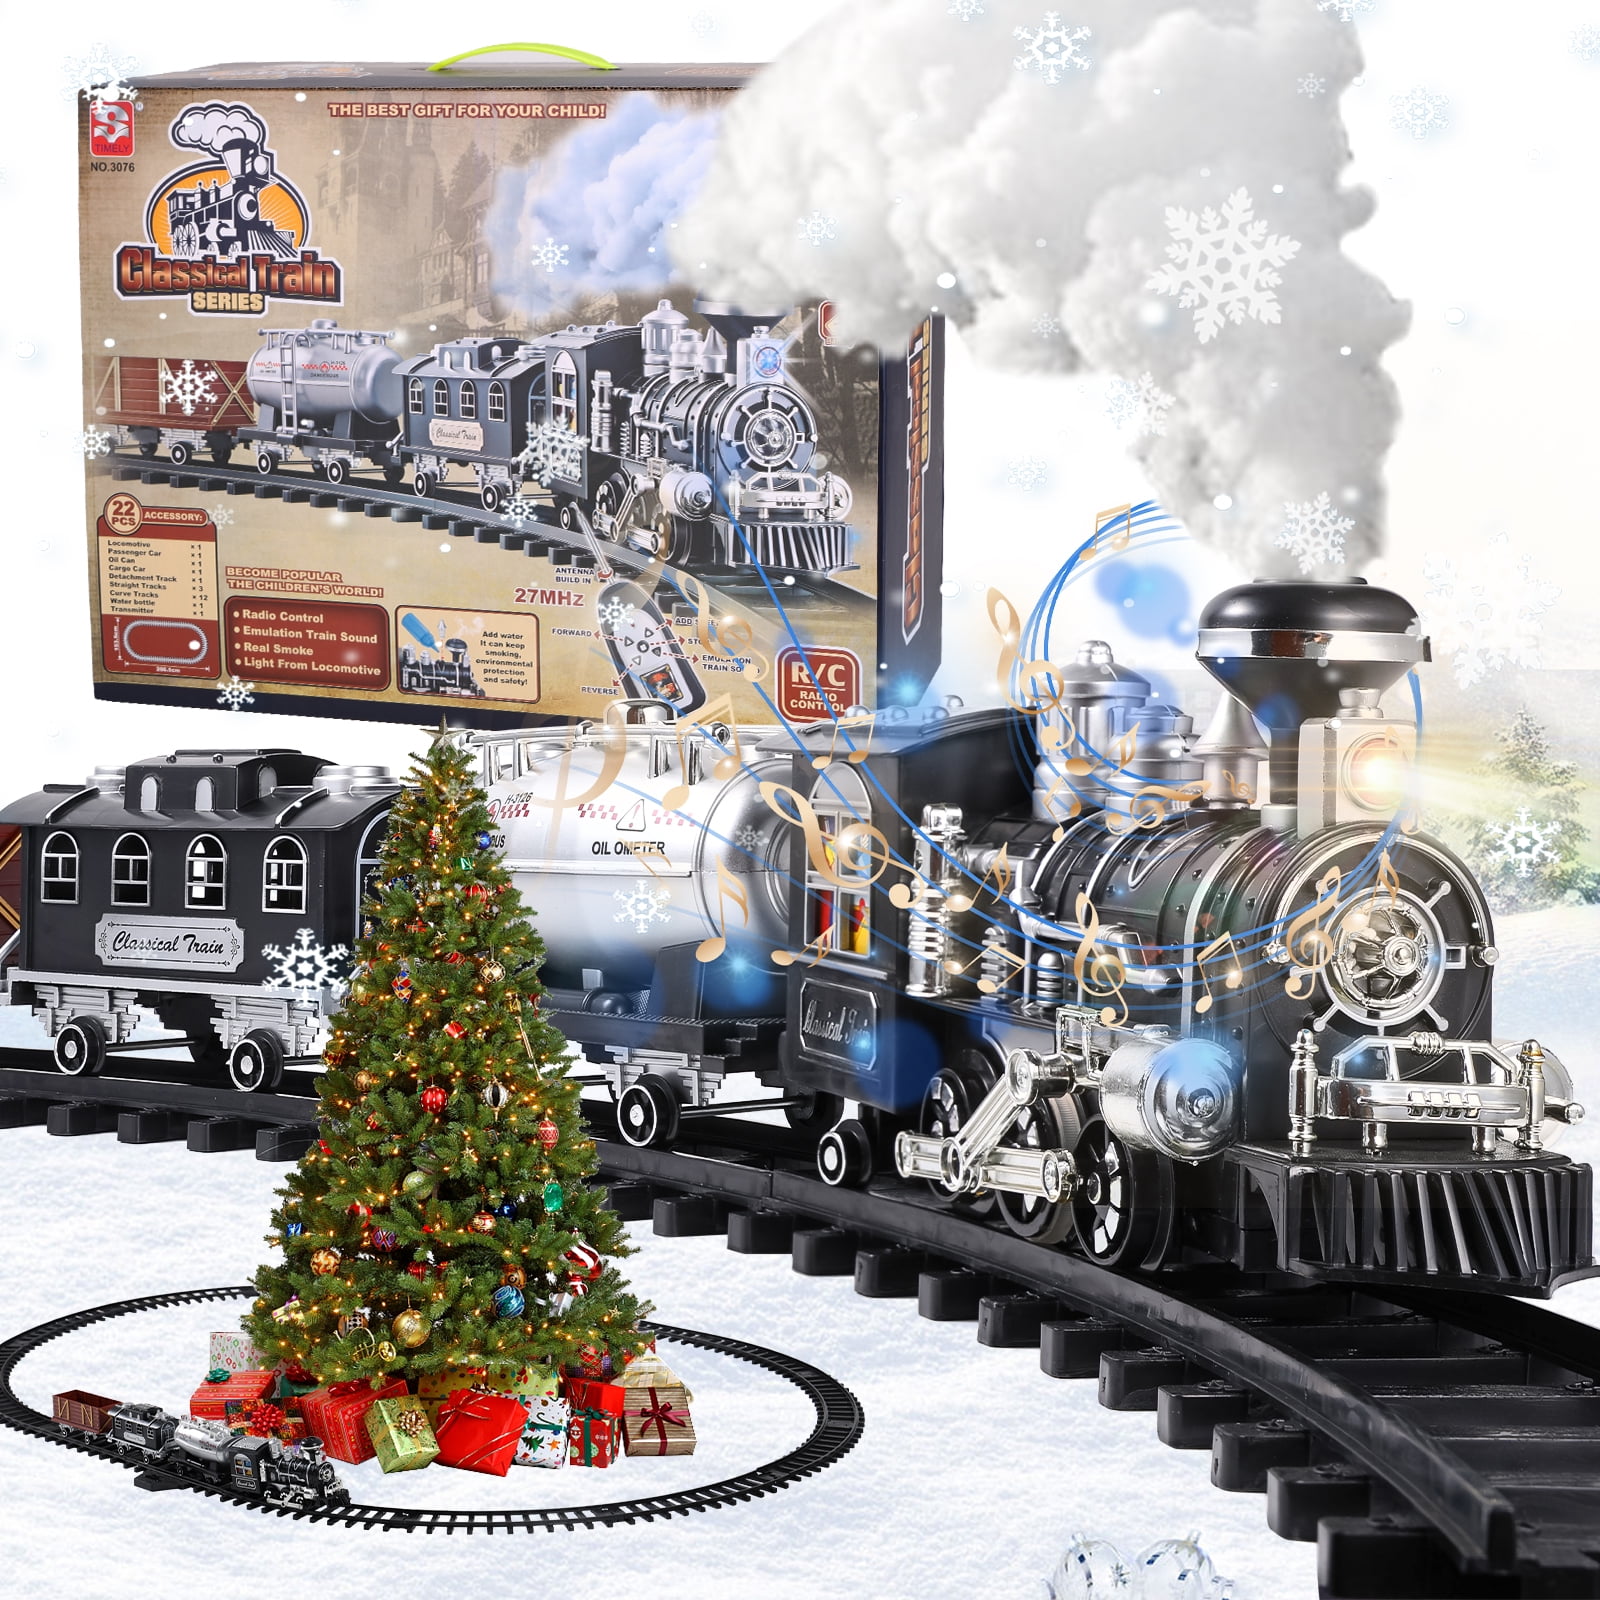 Christmas Night on Steam